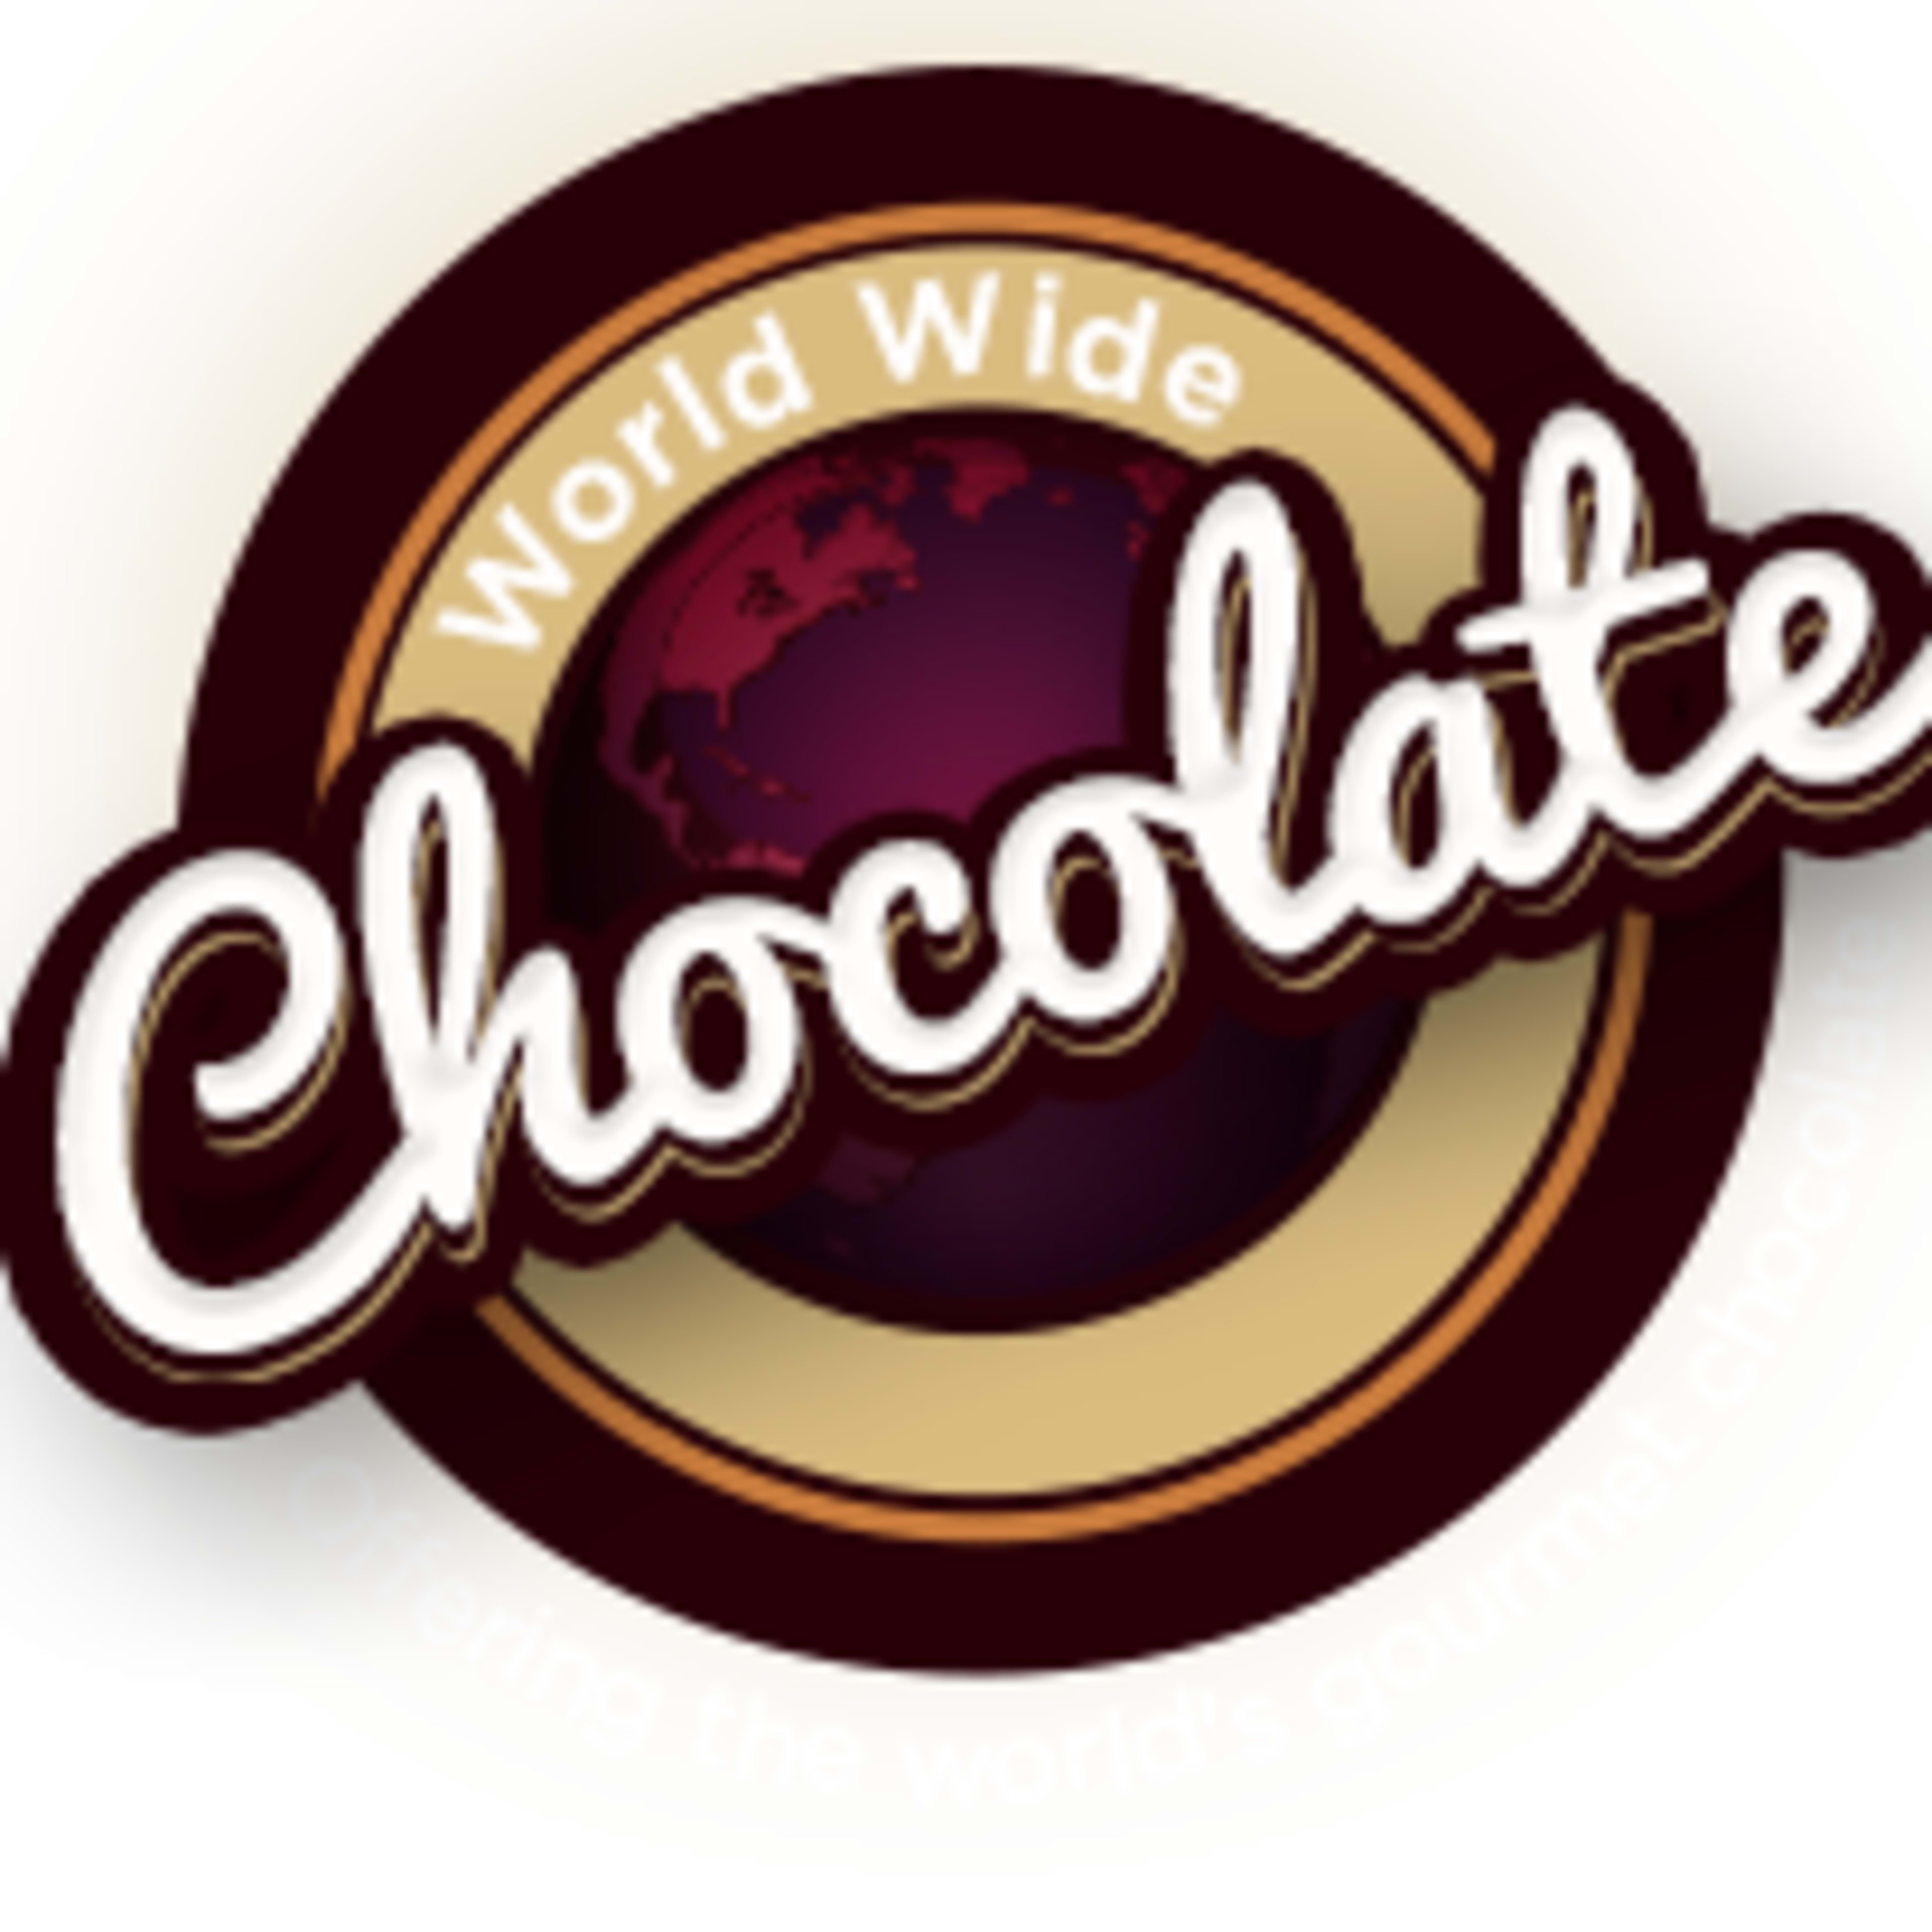 World Wide ChocolateCode